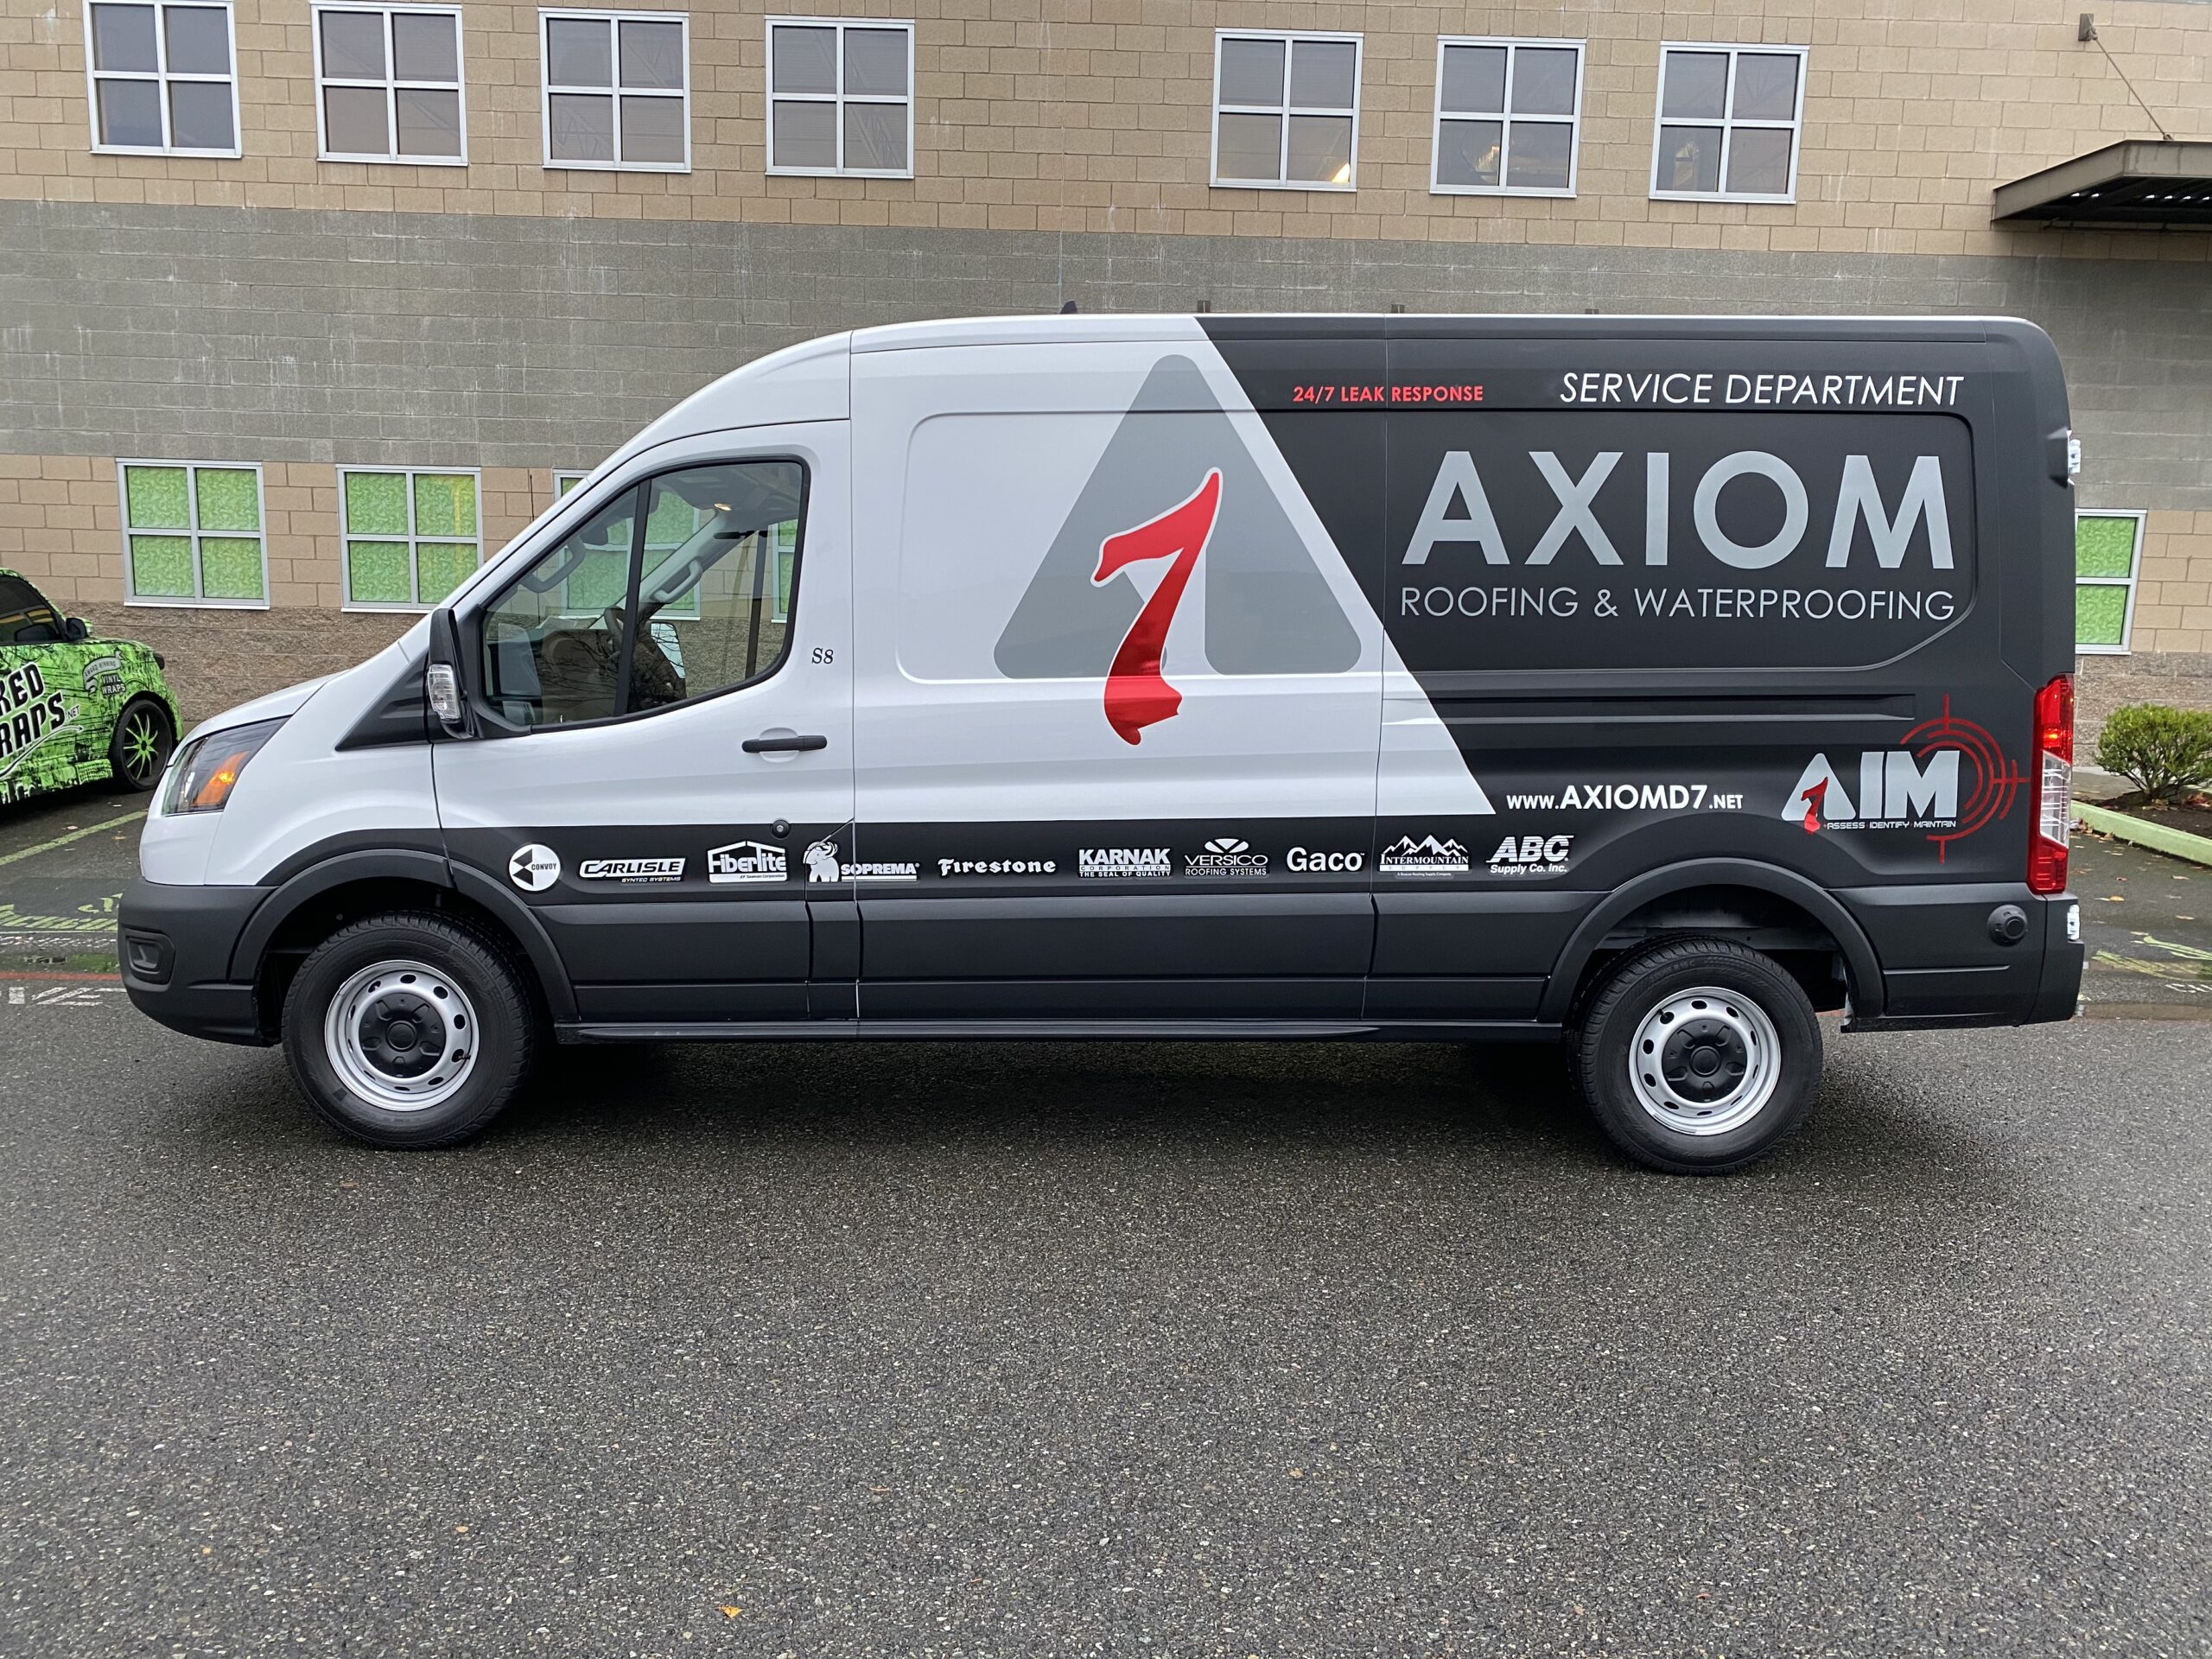 Axiom Roofing & Waterproofing Vehicle Wrap